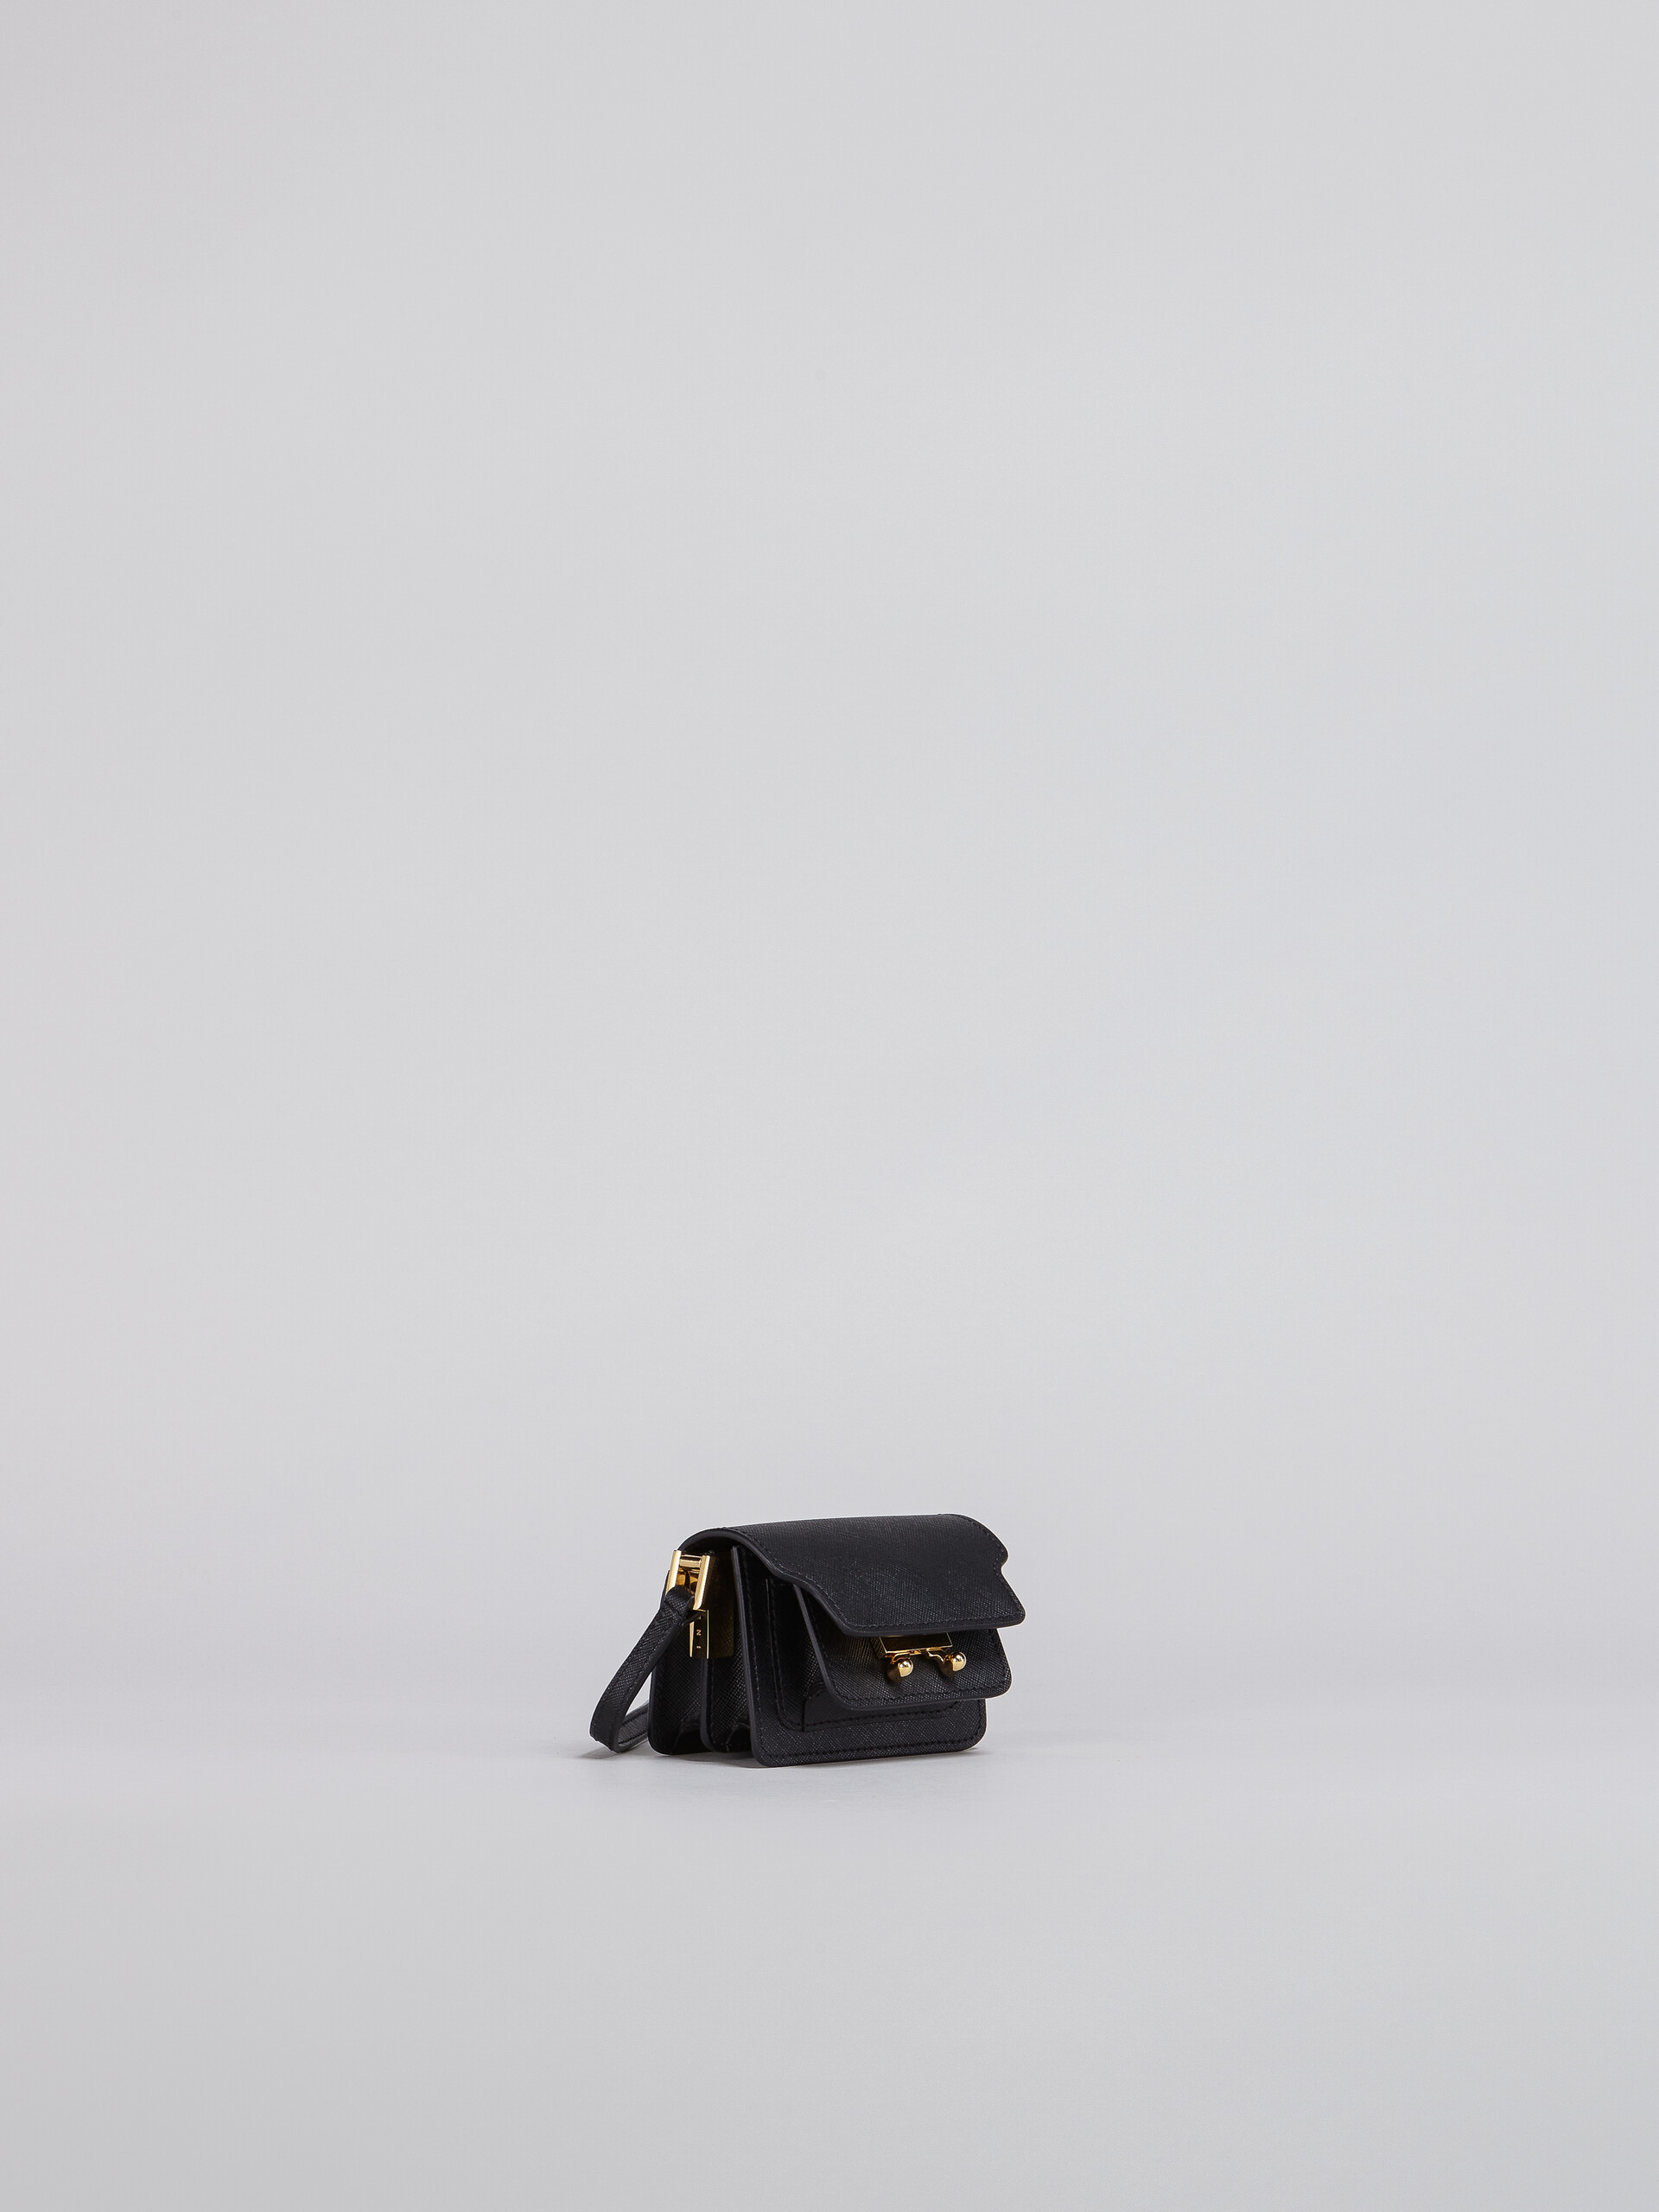 Tasche TRUNK aus schwarzem Saffiano-Kalbsleder - Schultertaschen - Image 5